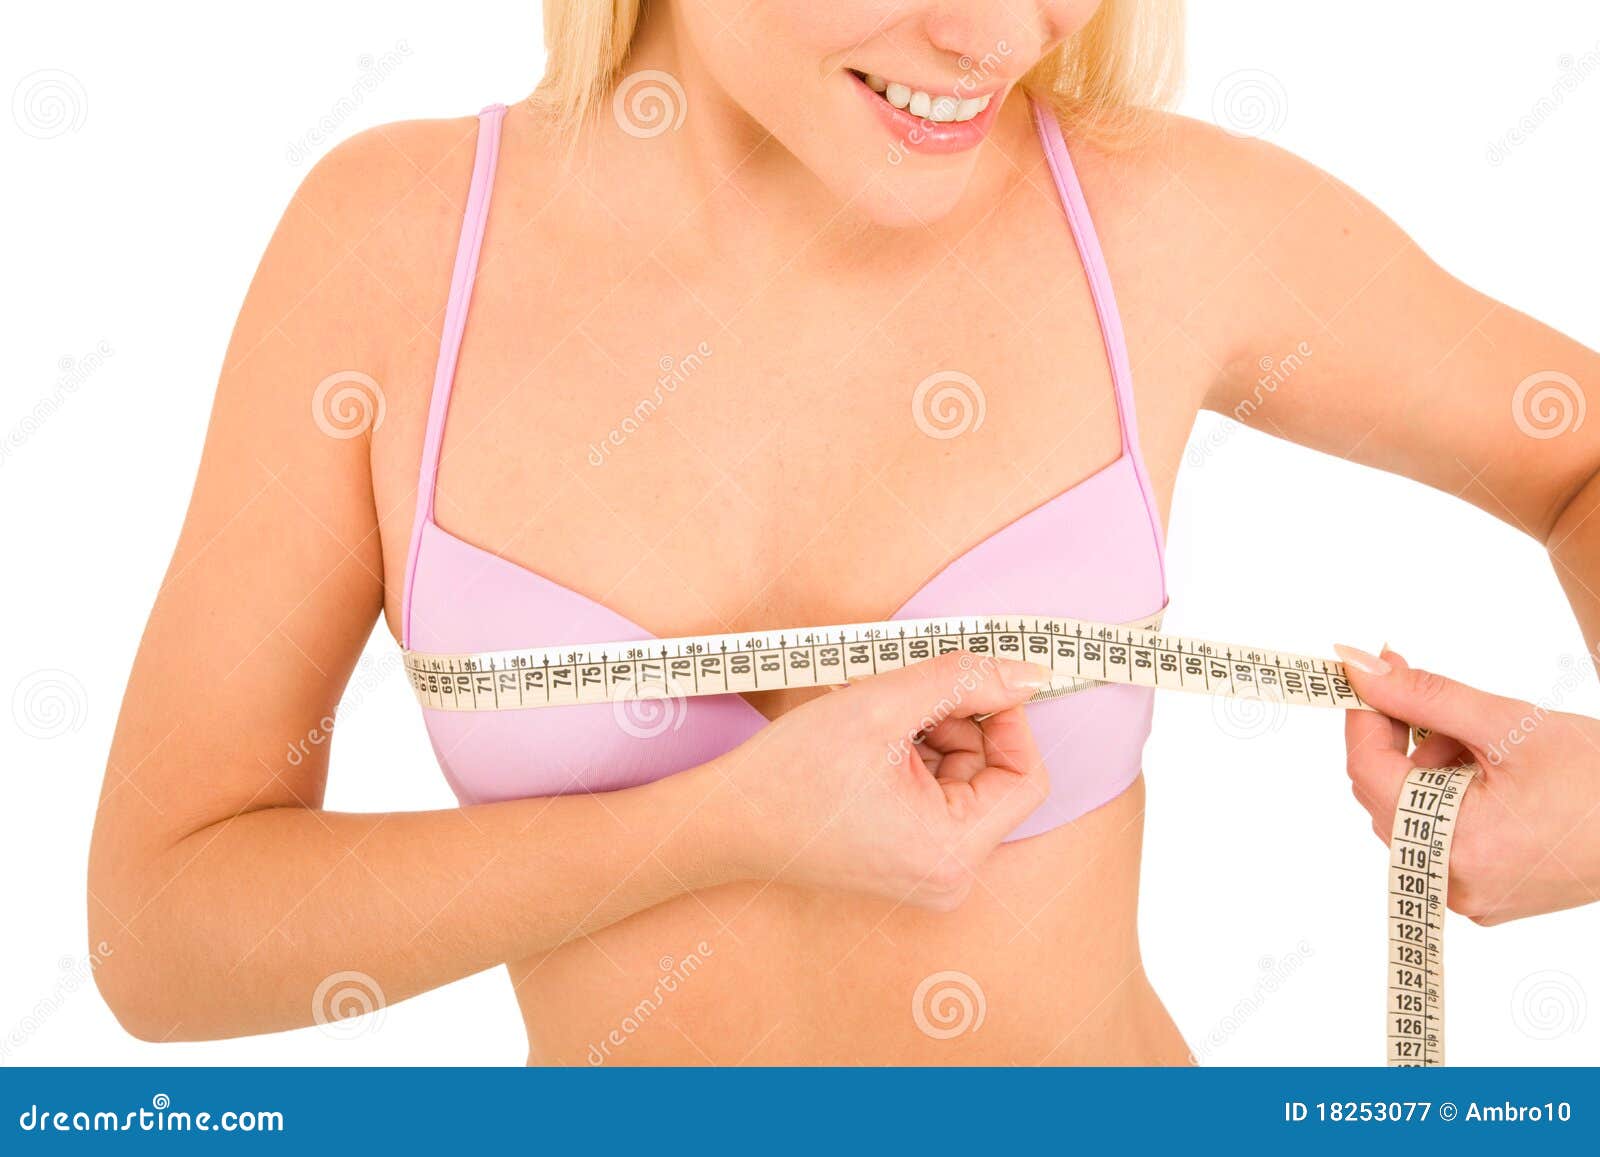 Почему стали мягче груди. Грудь. Измерить грудь у женщин. Измерение груди у девочек. Окр груди.